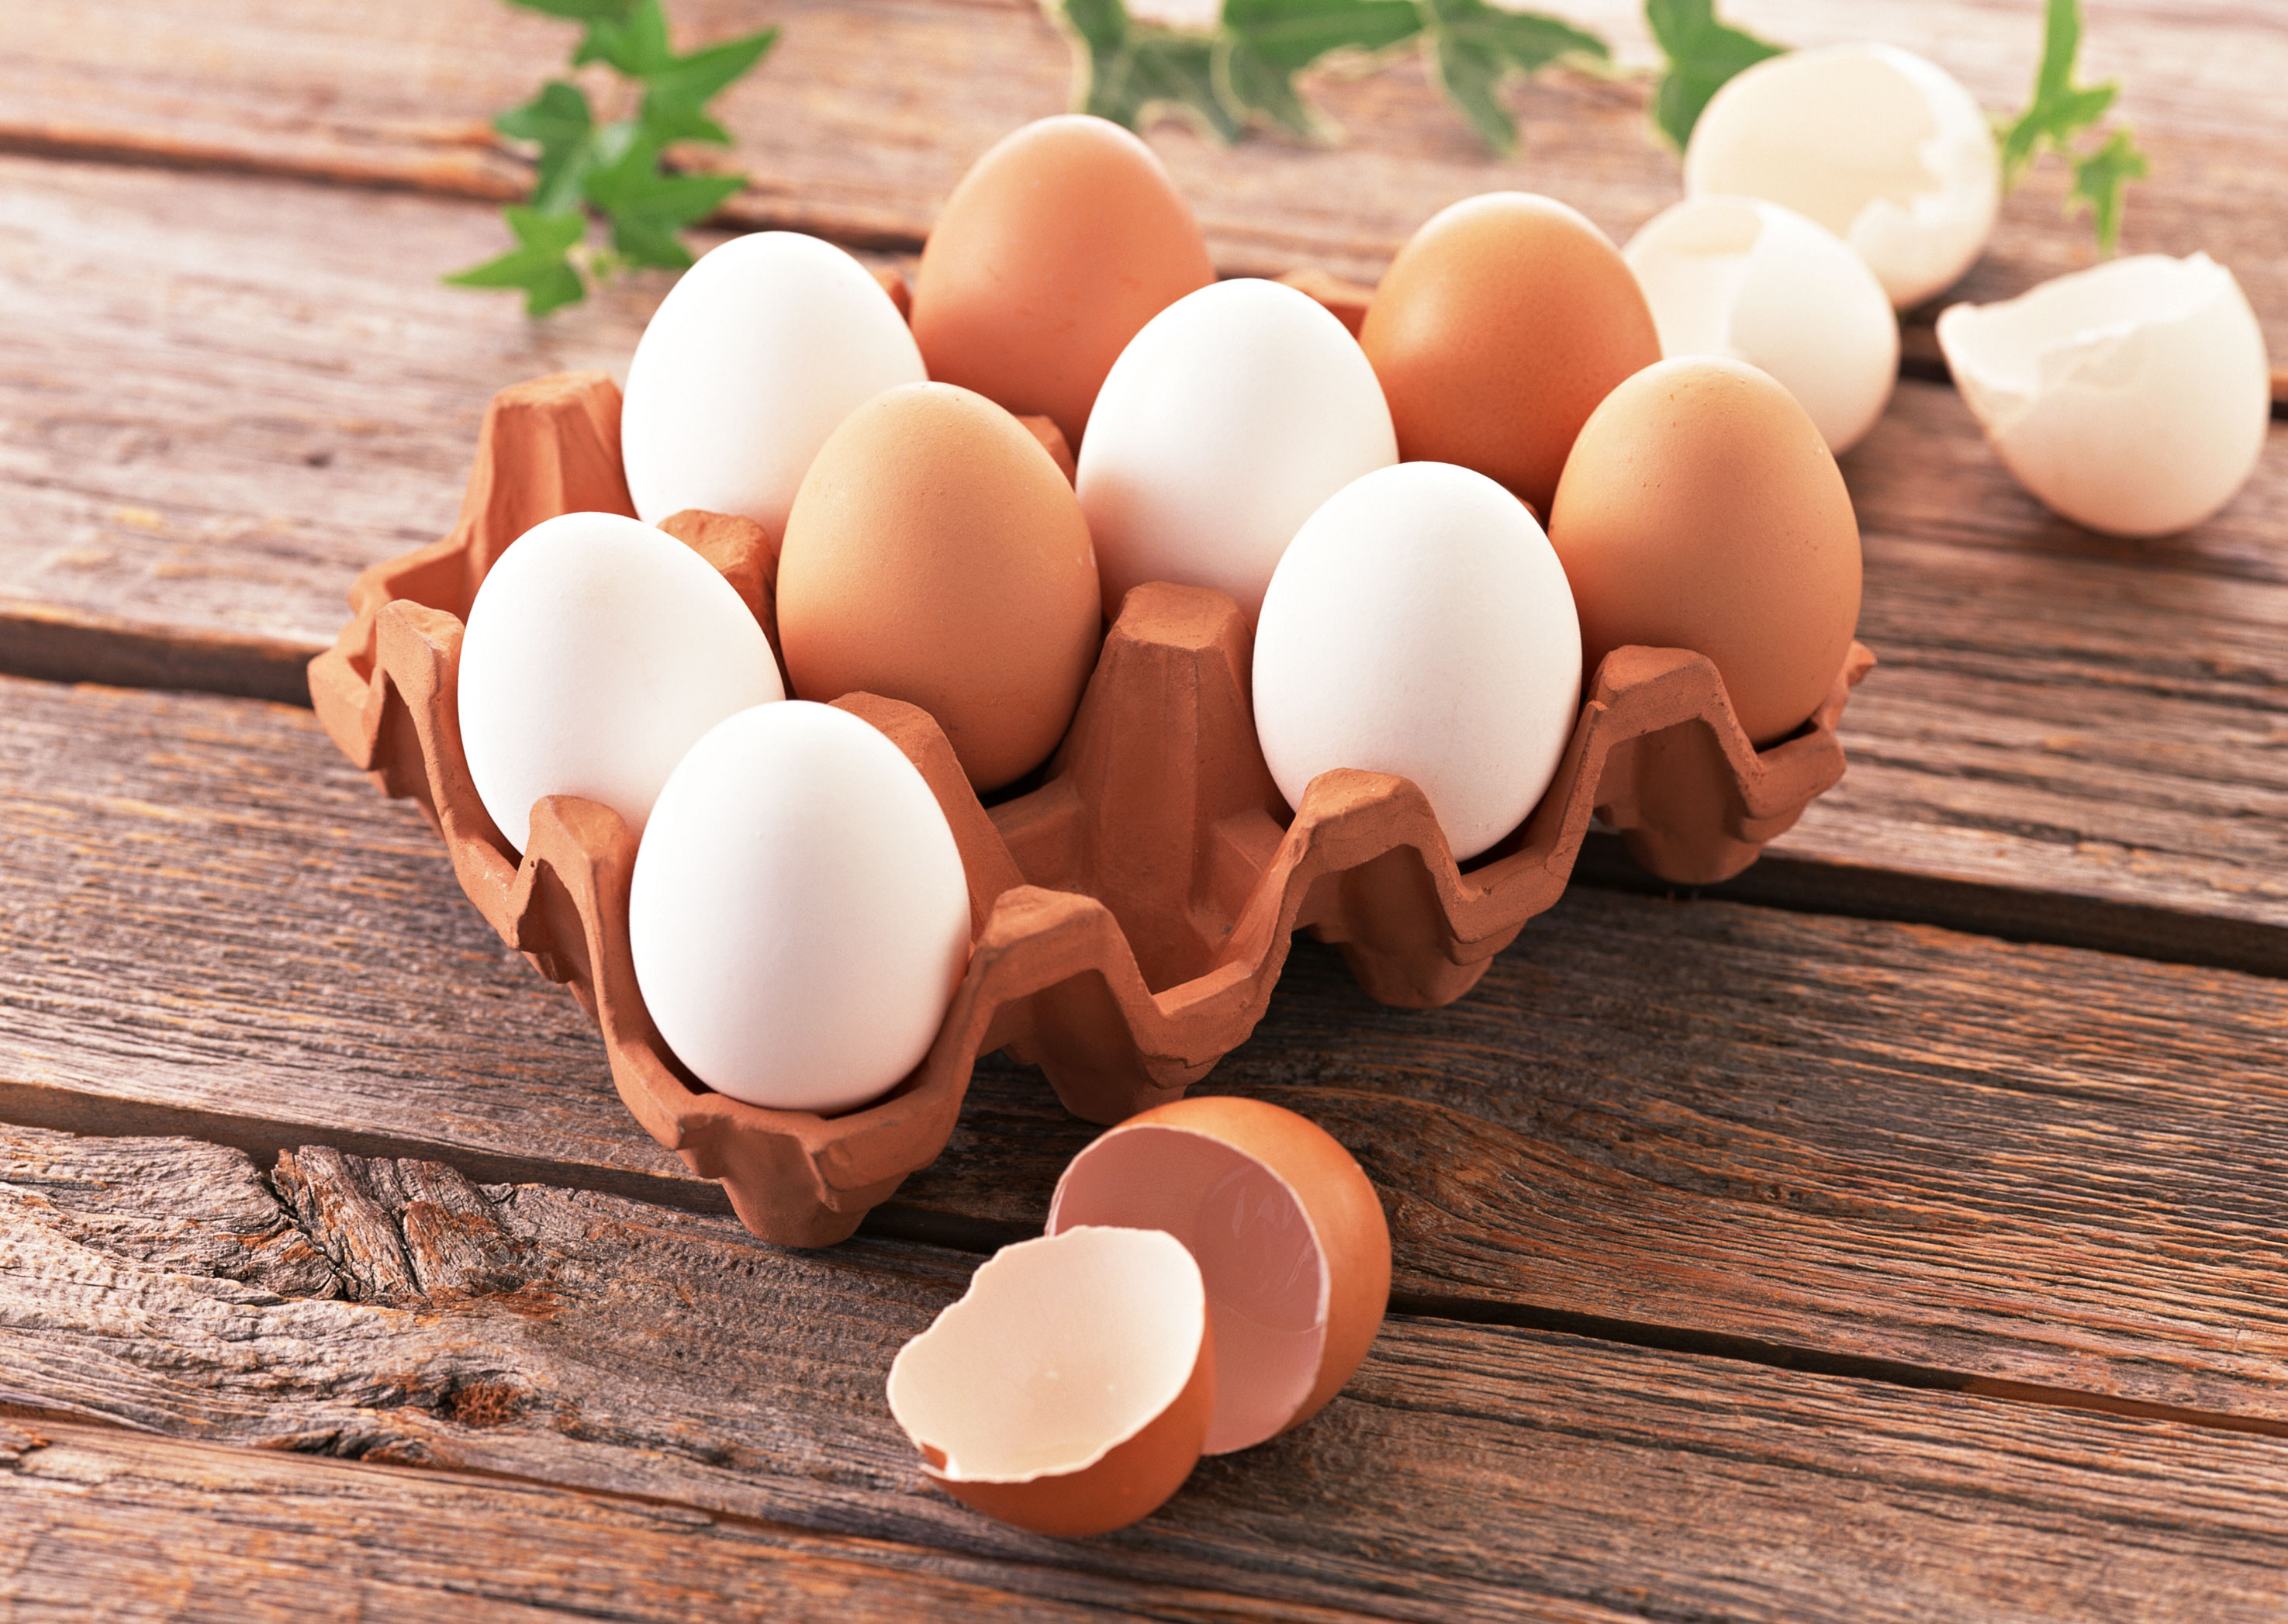 هل يجب ان نغسل البيض قبل طهيه؟